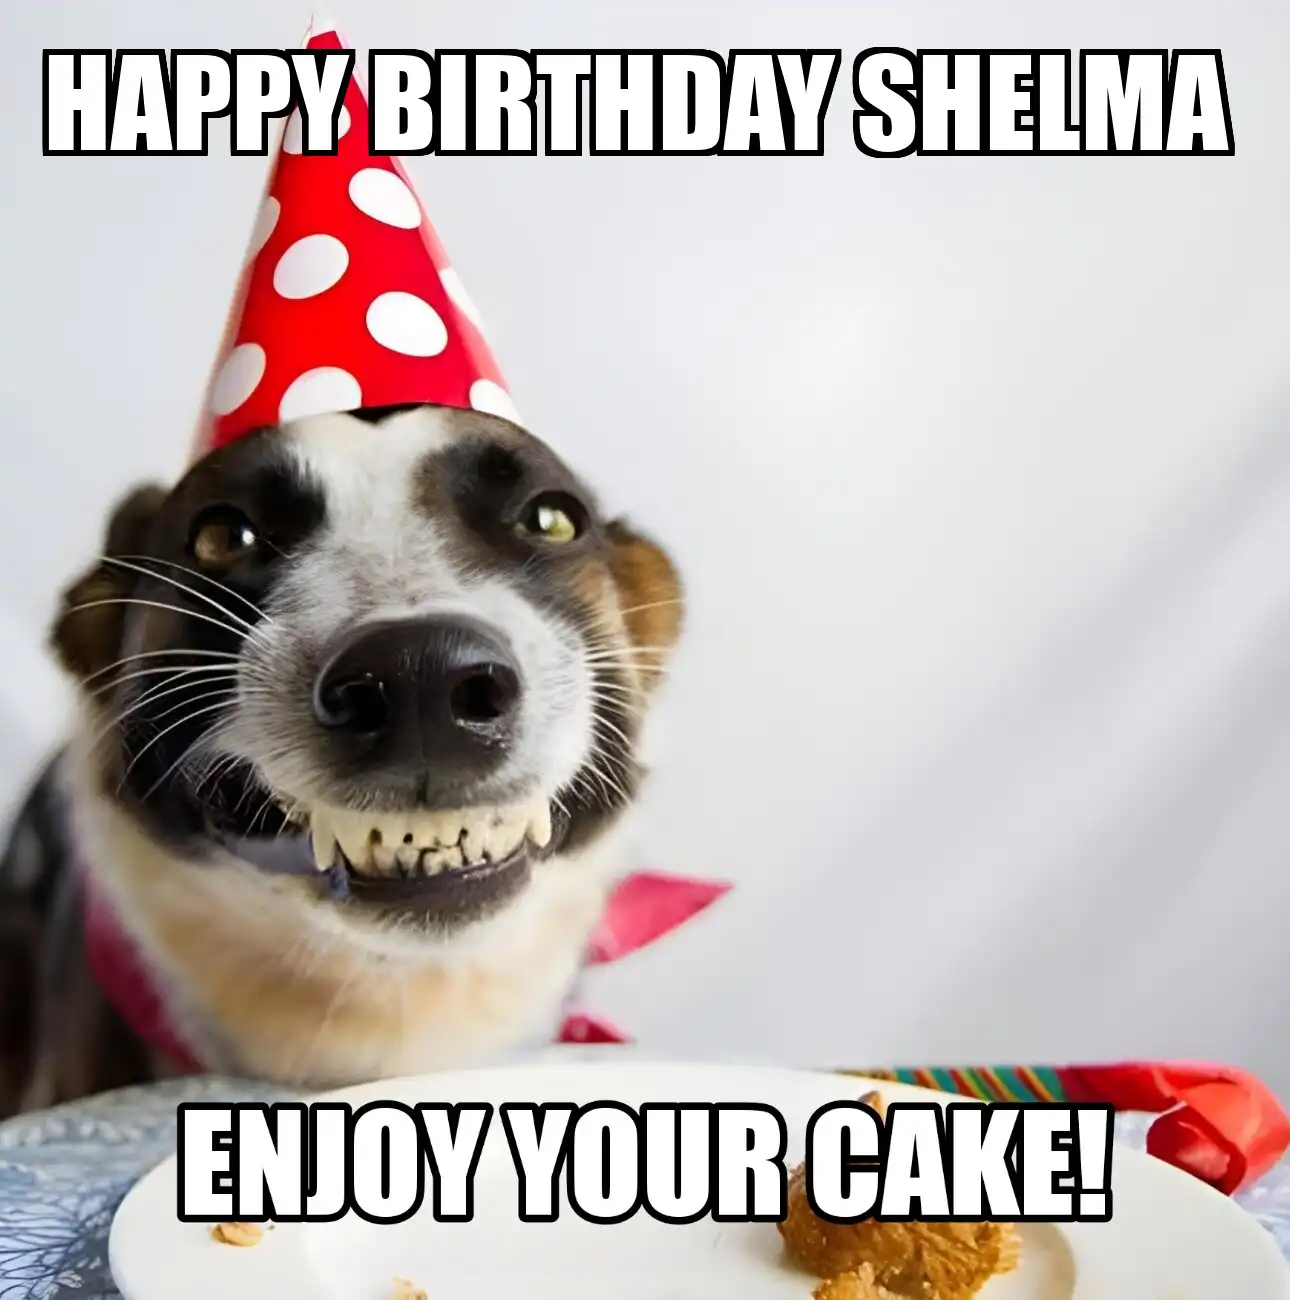 Happy Birthday Shelma Enjoy Your Cake Dog Meme